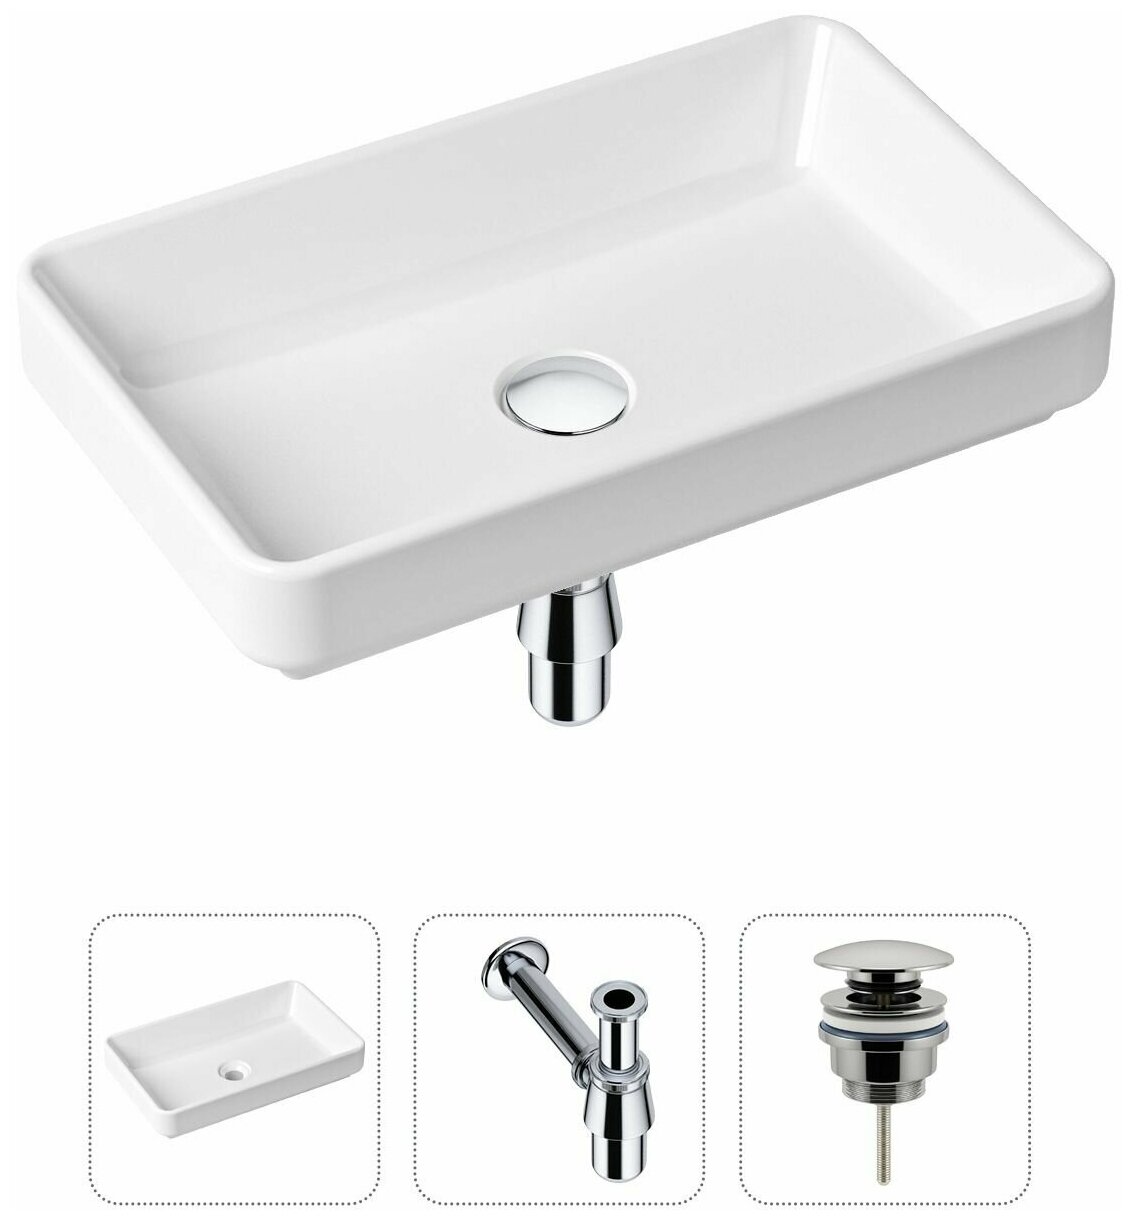 Комплект 3 в 1 Lavinia Boho Bathroom Sink 21520112: накладная фарфоровая раковина 55 см, металлический сифон, донный клапан